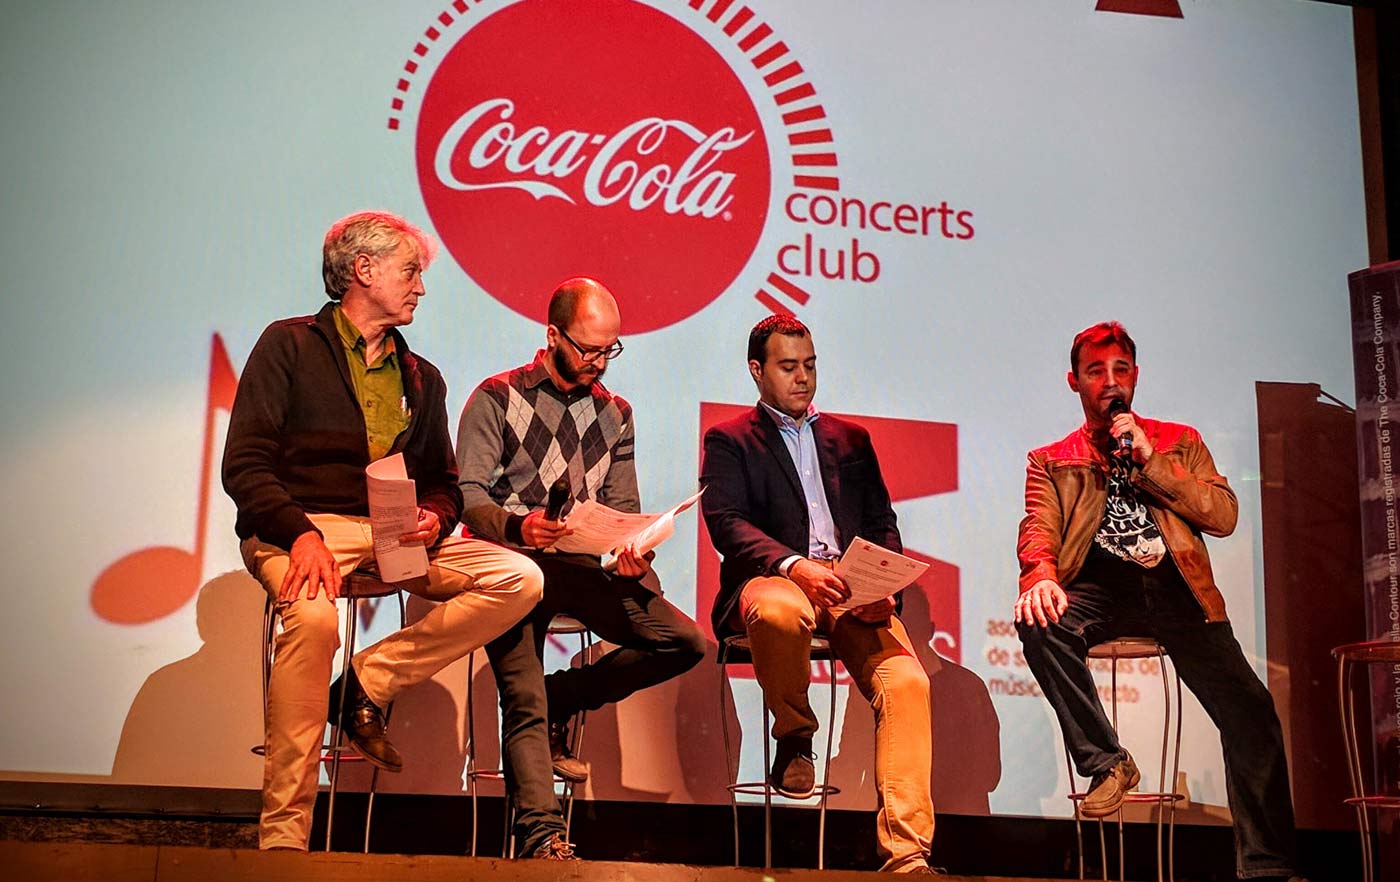 Presentado en Zaragoza el Coca Cola Concerts Club